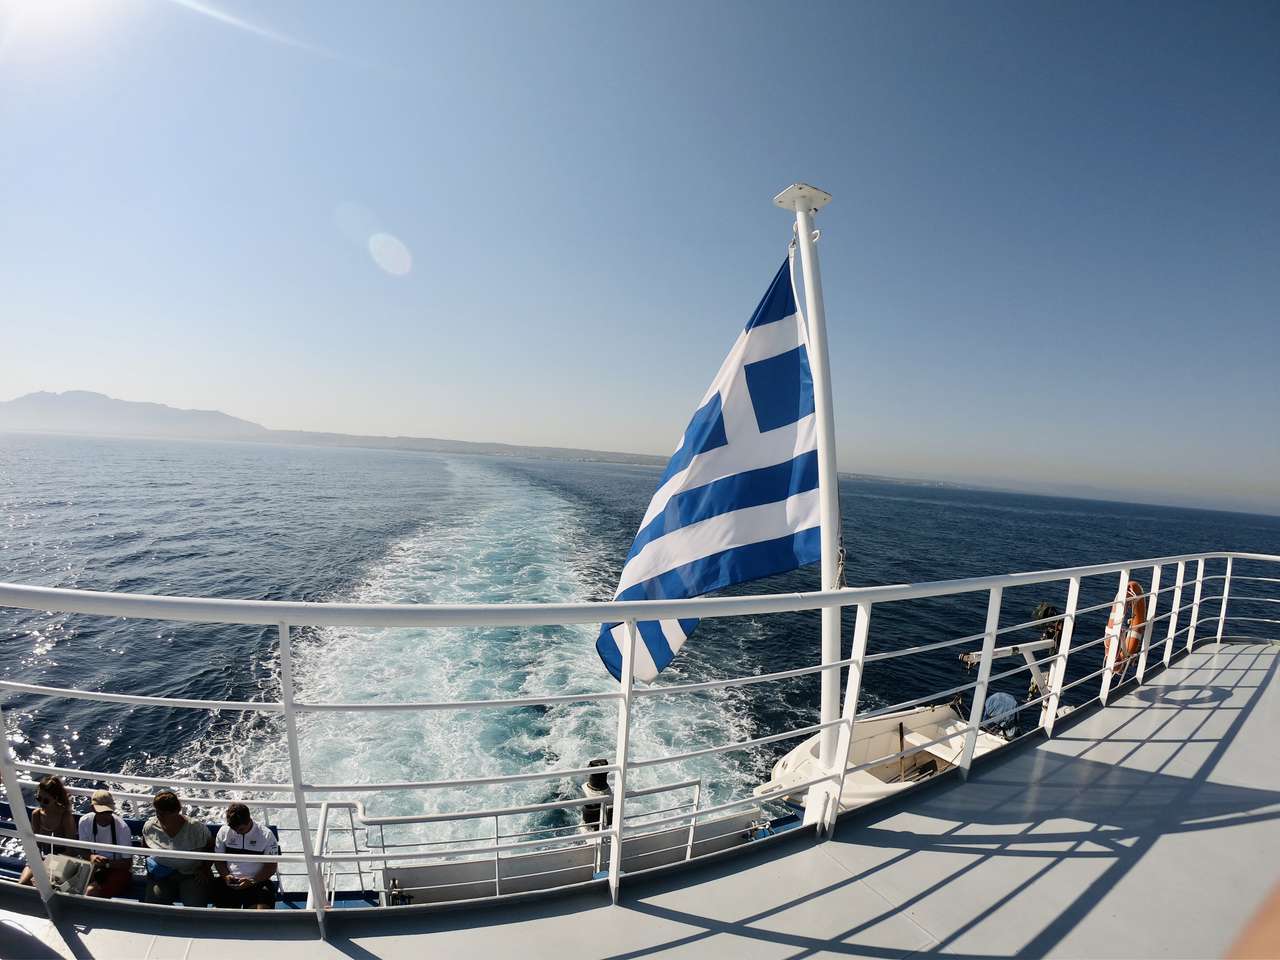 Croaziera cu feribotul de la insula Kos la insula Kalymnos - Grecia puzzle online